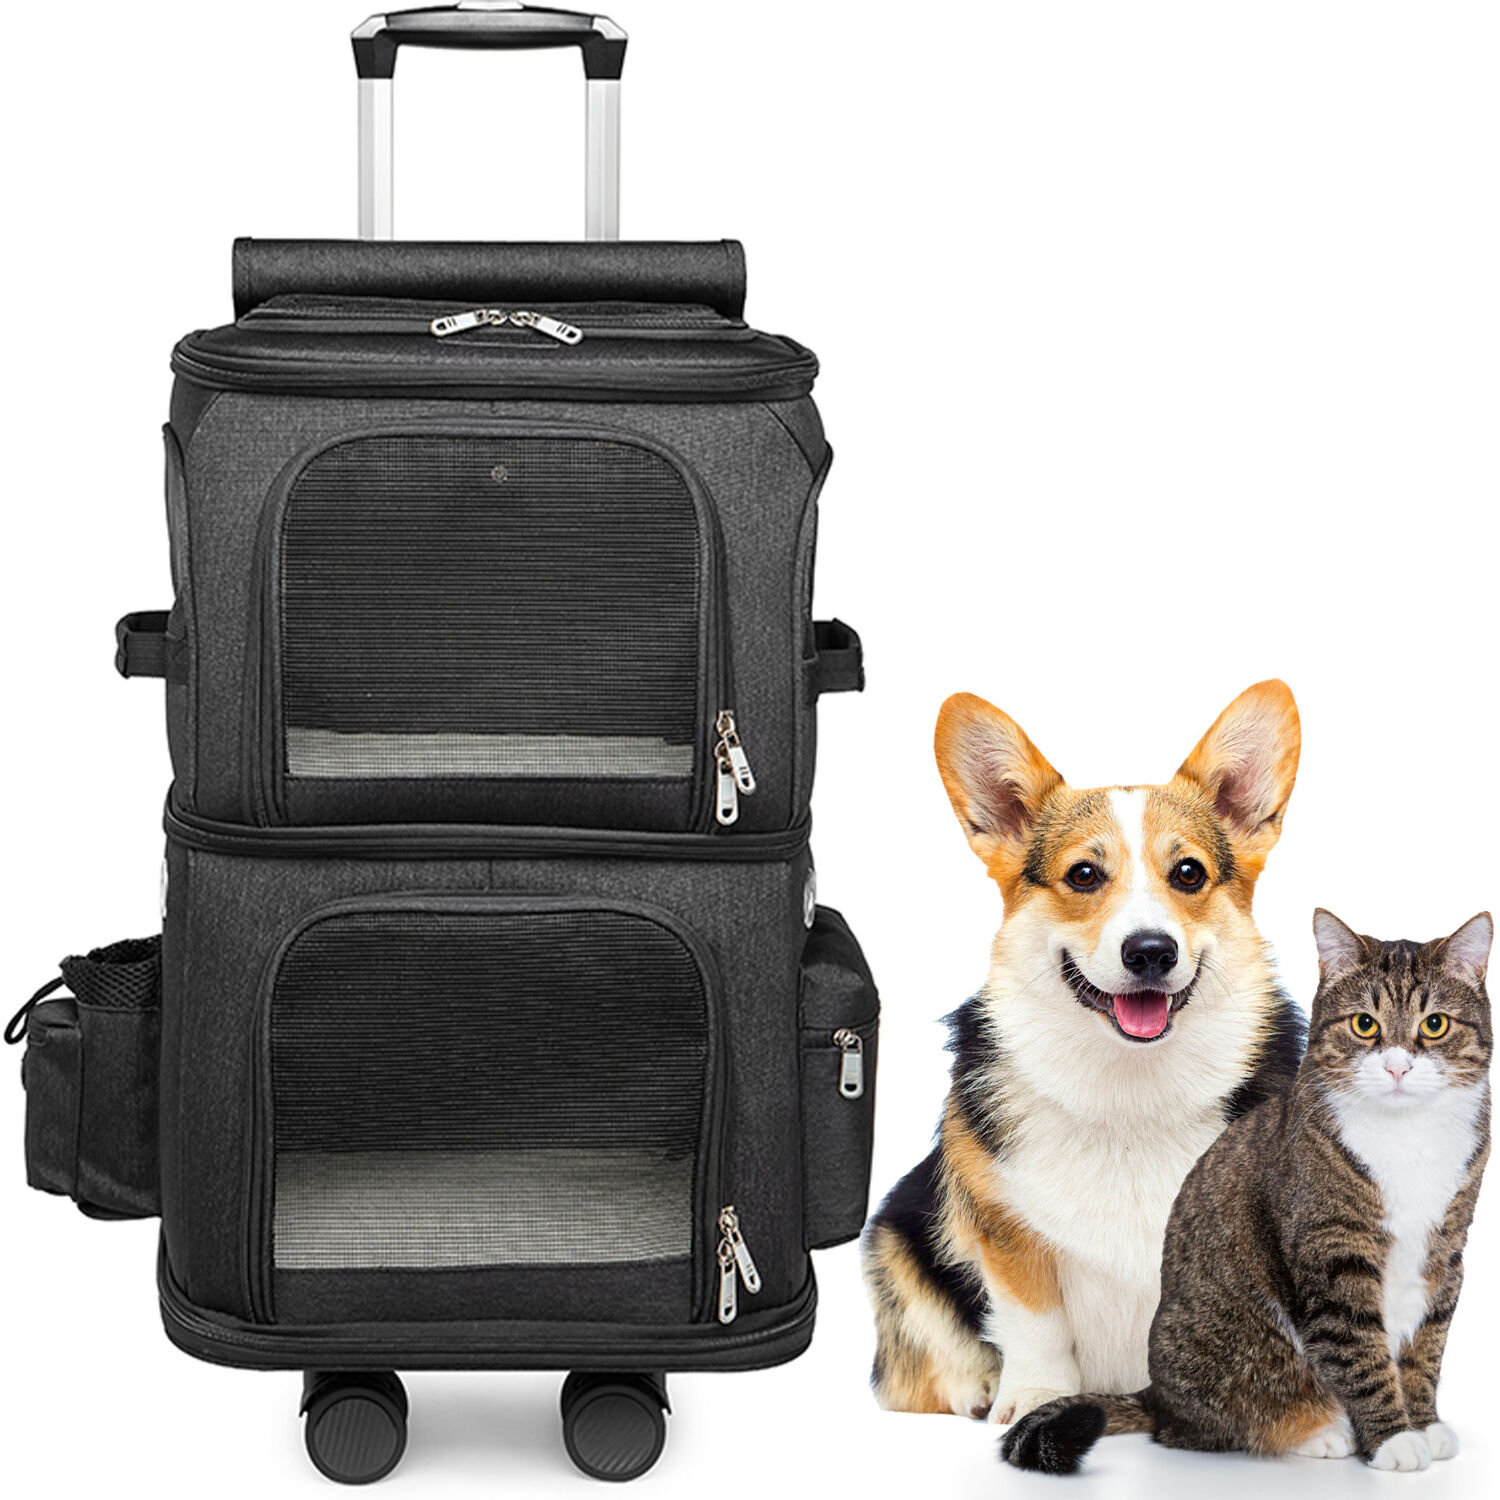 Ibiyaya Two Tier Pet Backpack